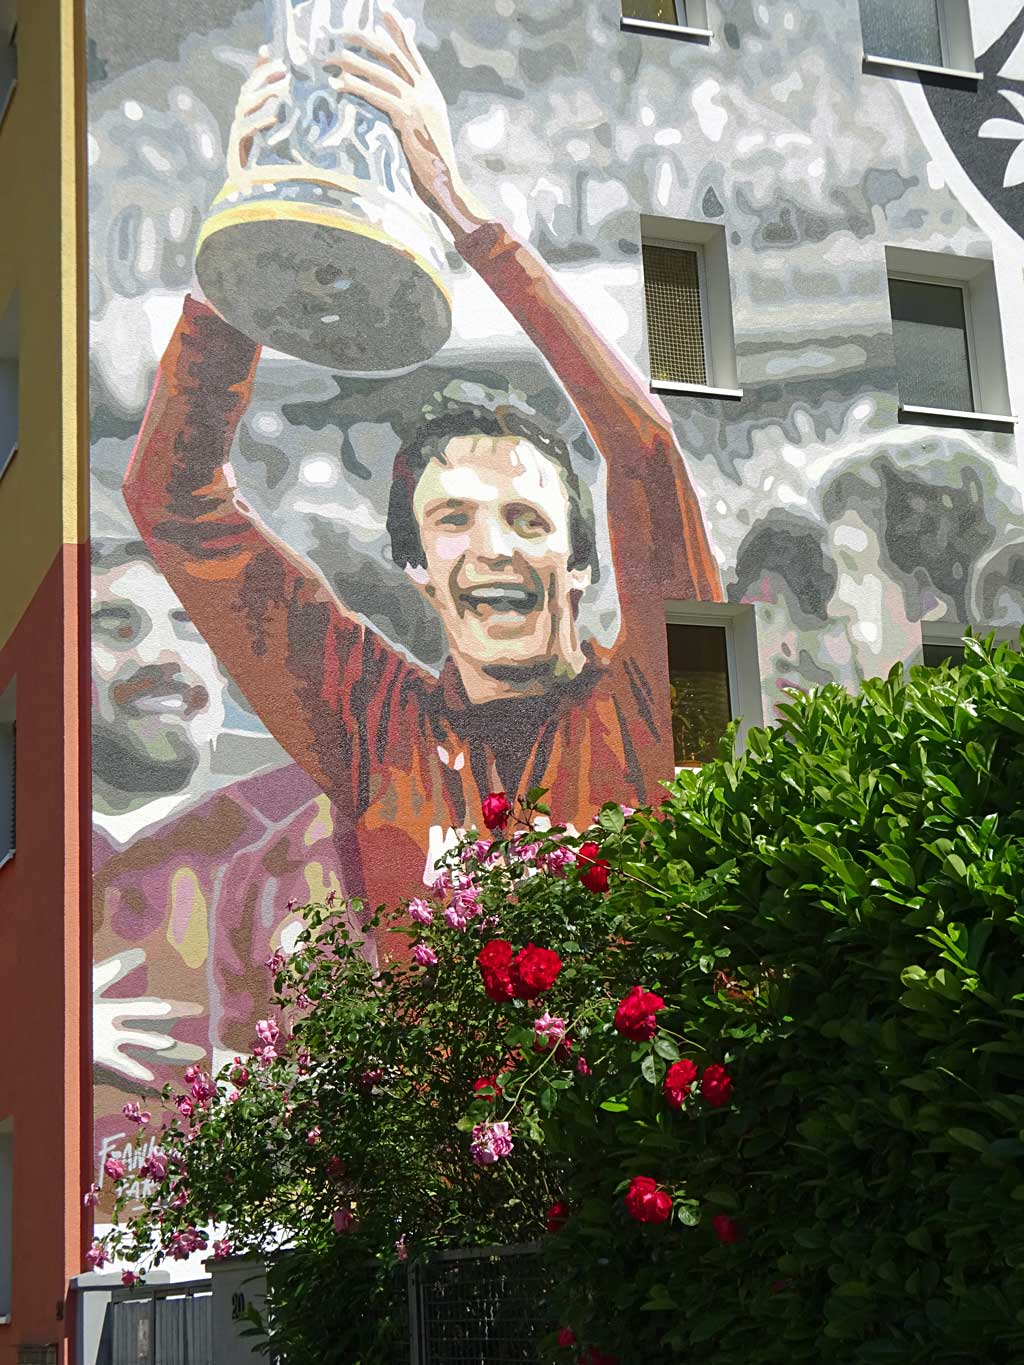 Mural mit großem Bild von Charly Körbel mit UEAFA-Cup in den Händen